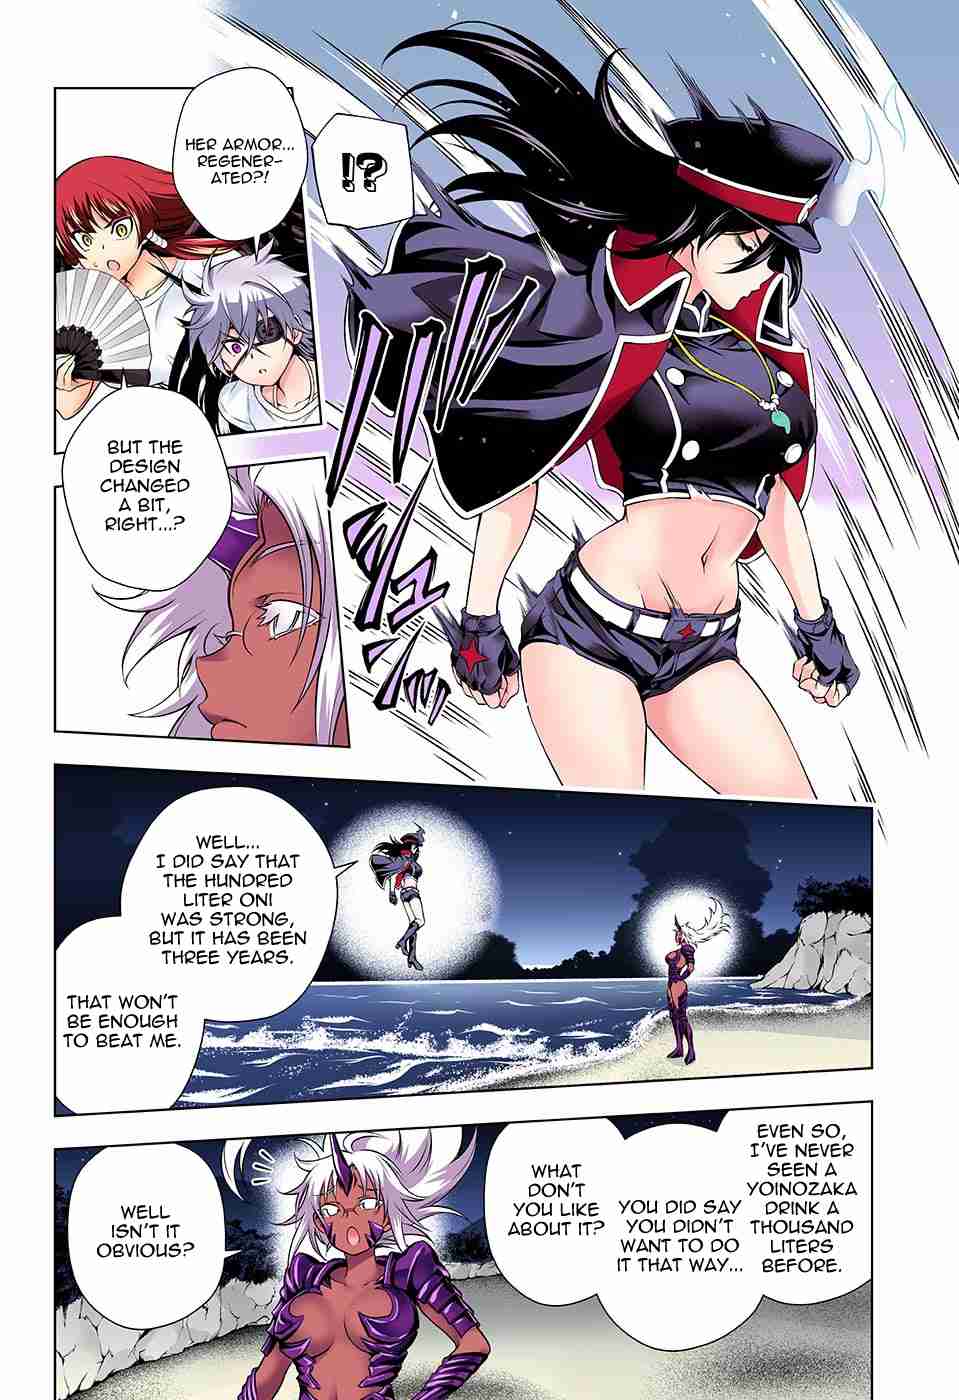 Yuragi sou no Yuuna san Digital Colored Comics Vol. 14 Ch. 121